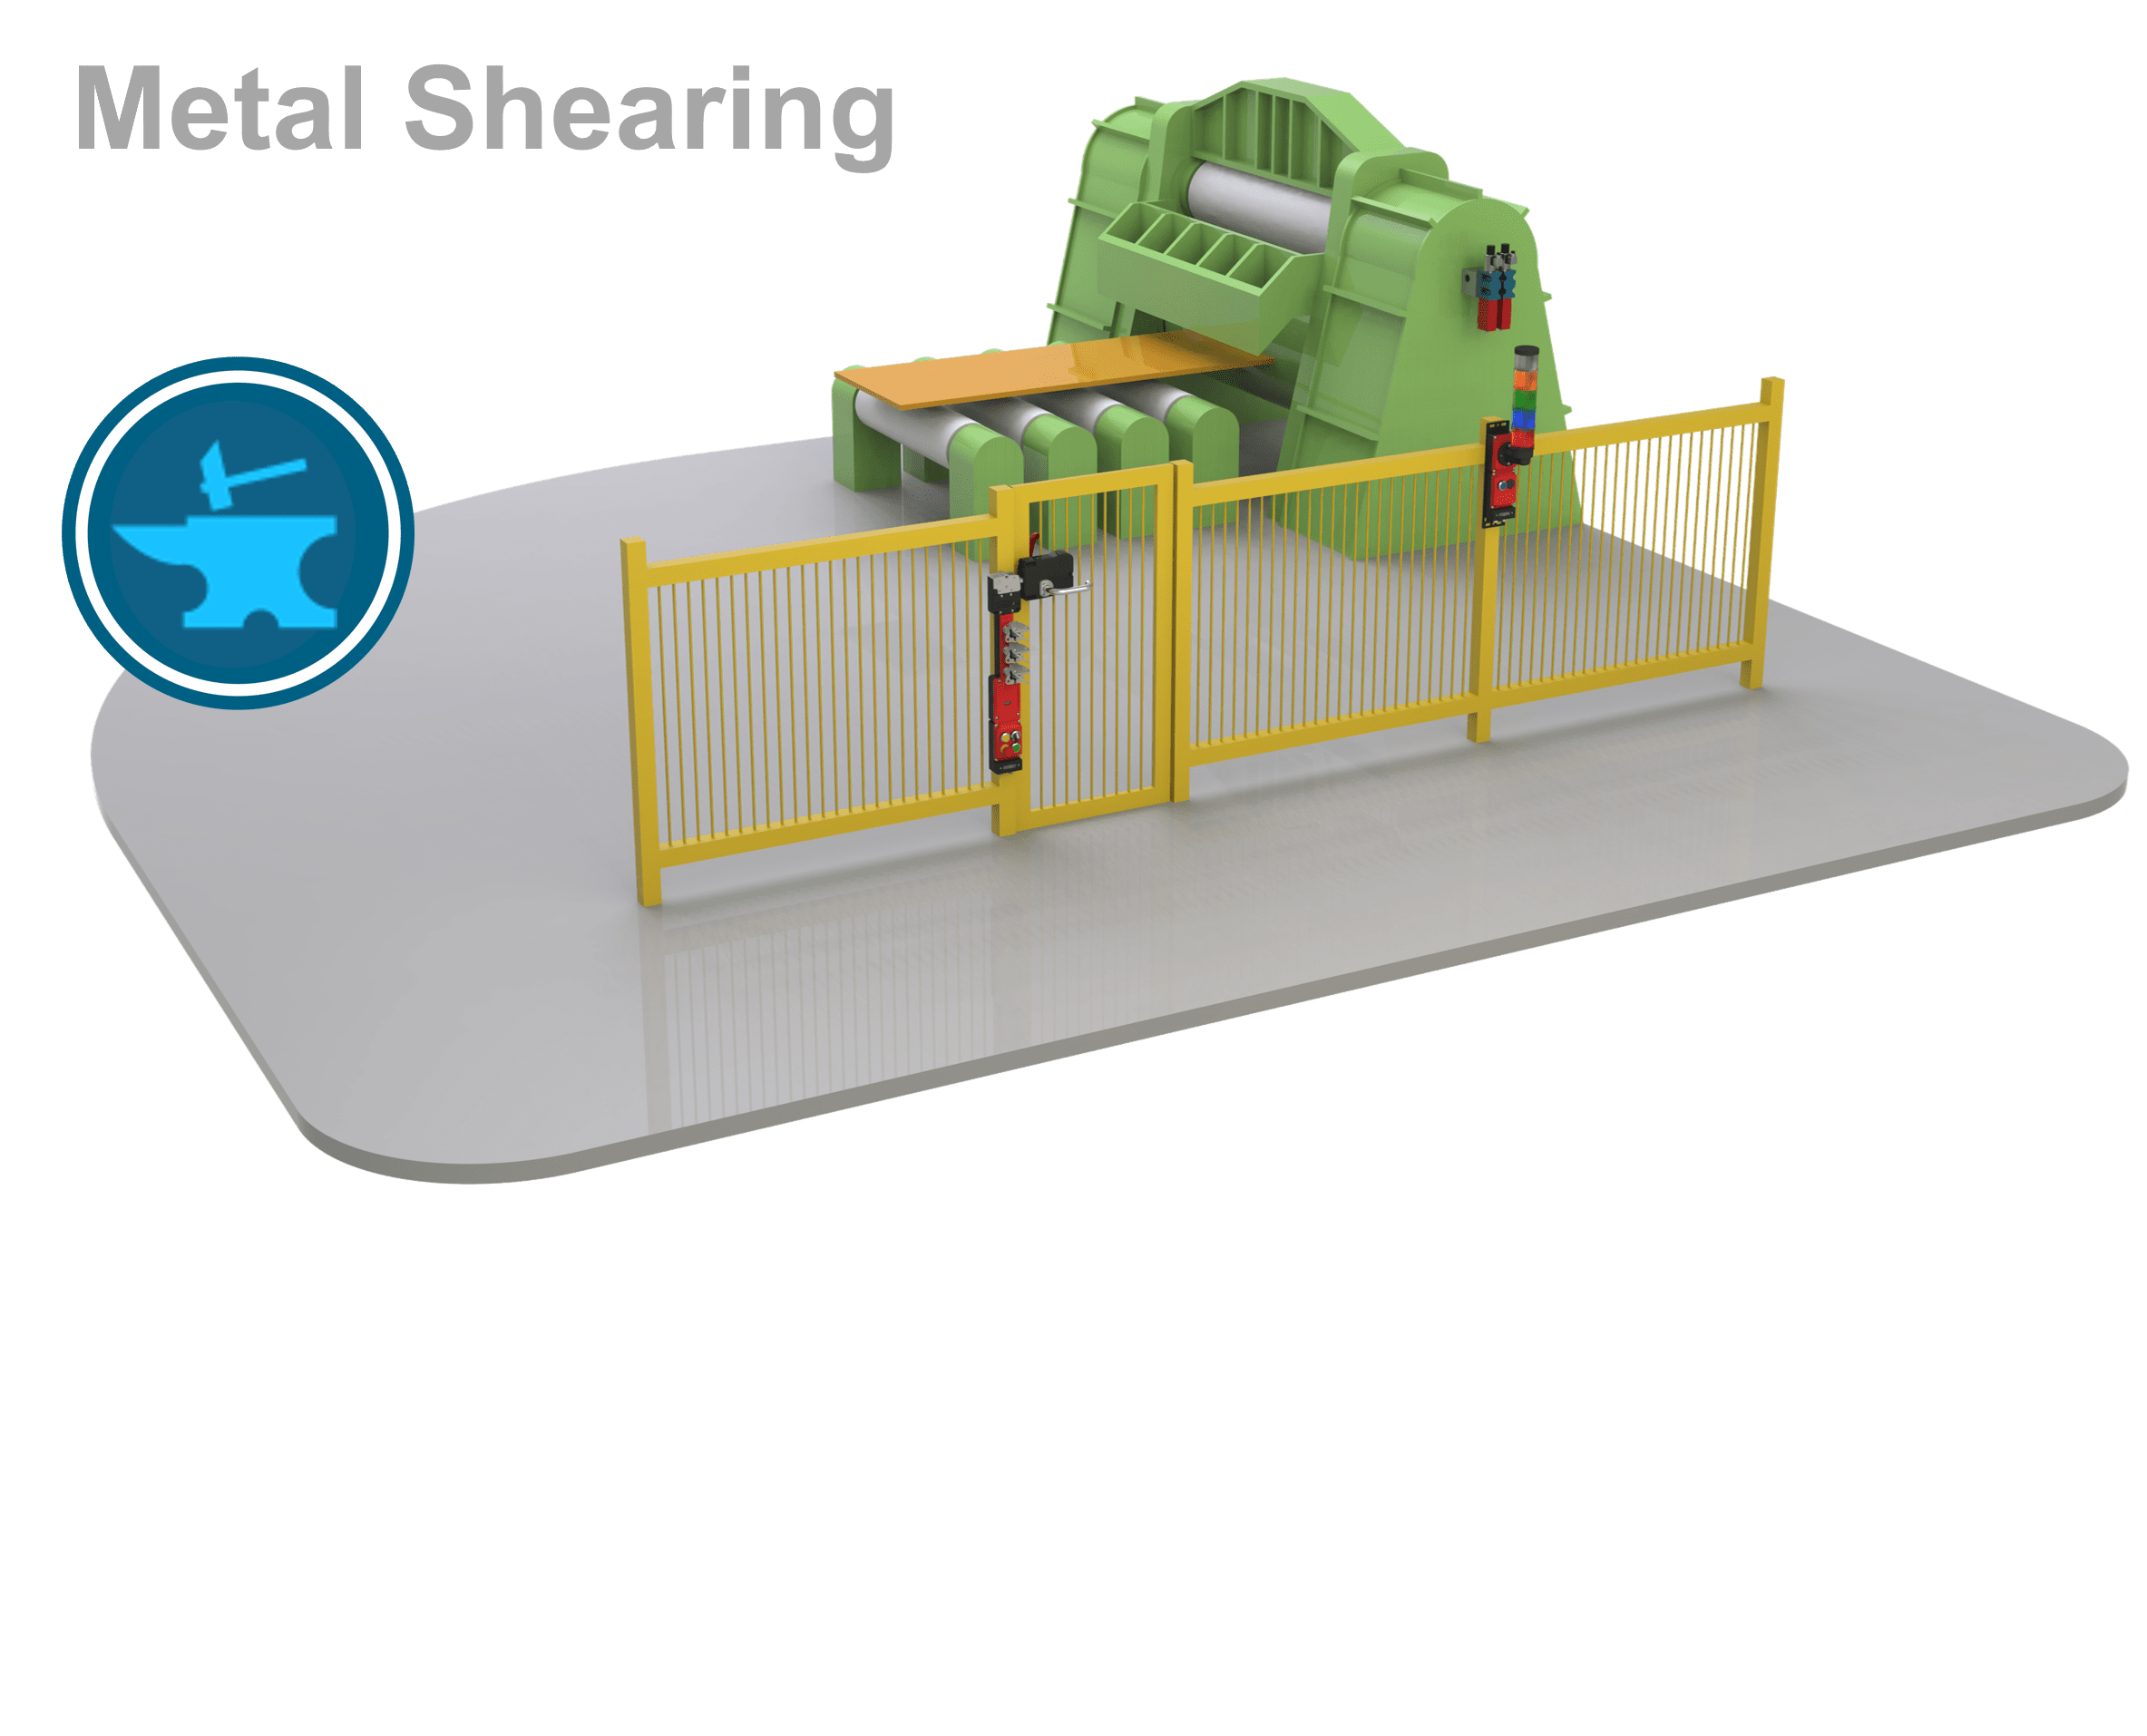 Metal Shearing – Sheet Metal Material Removal